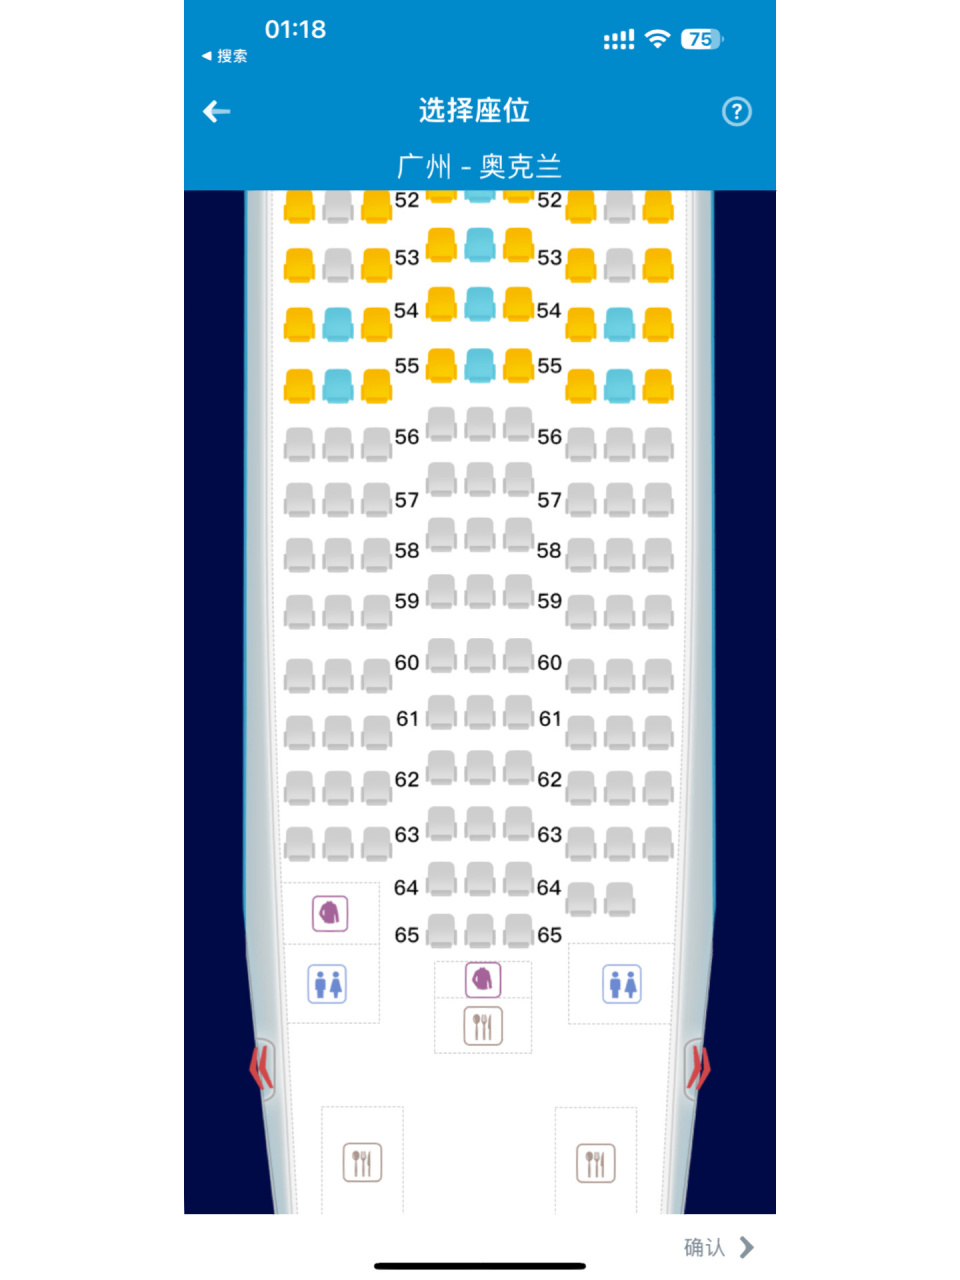 南航737经济舱座位图图片